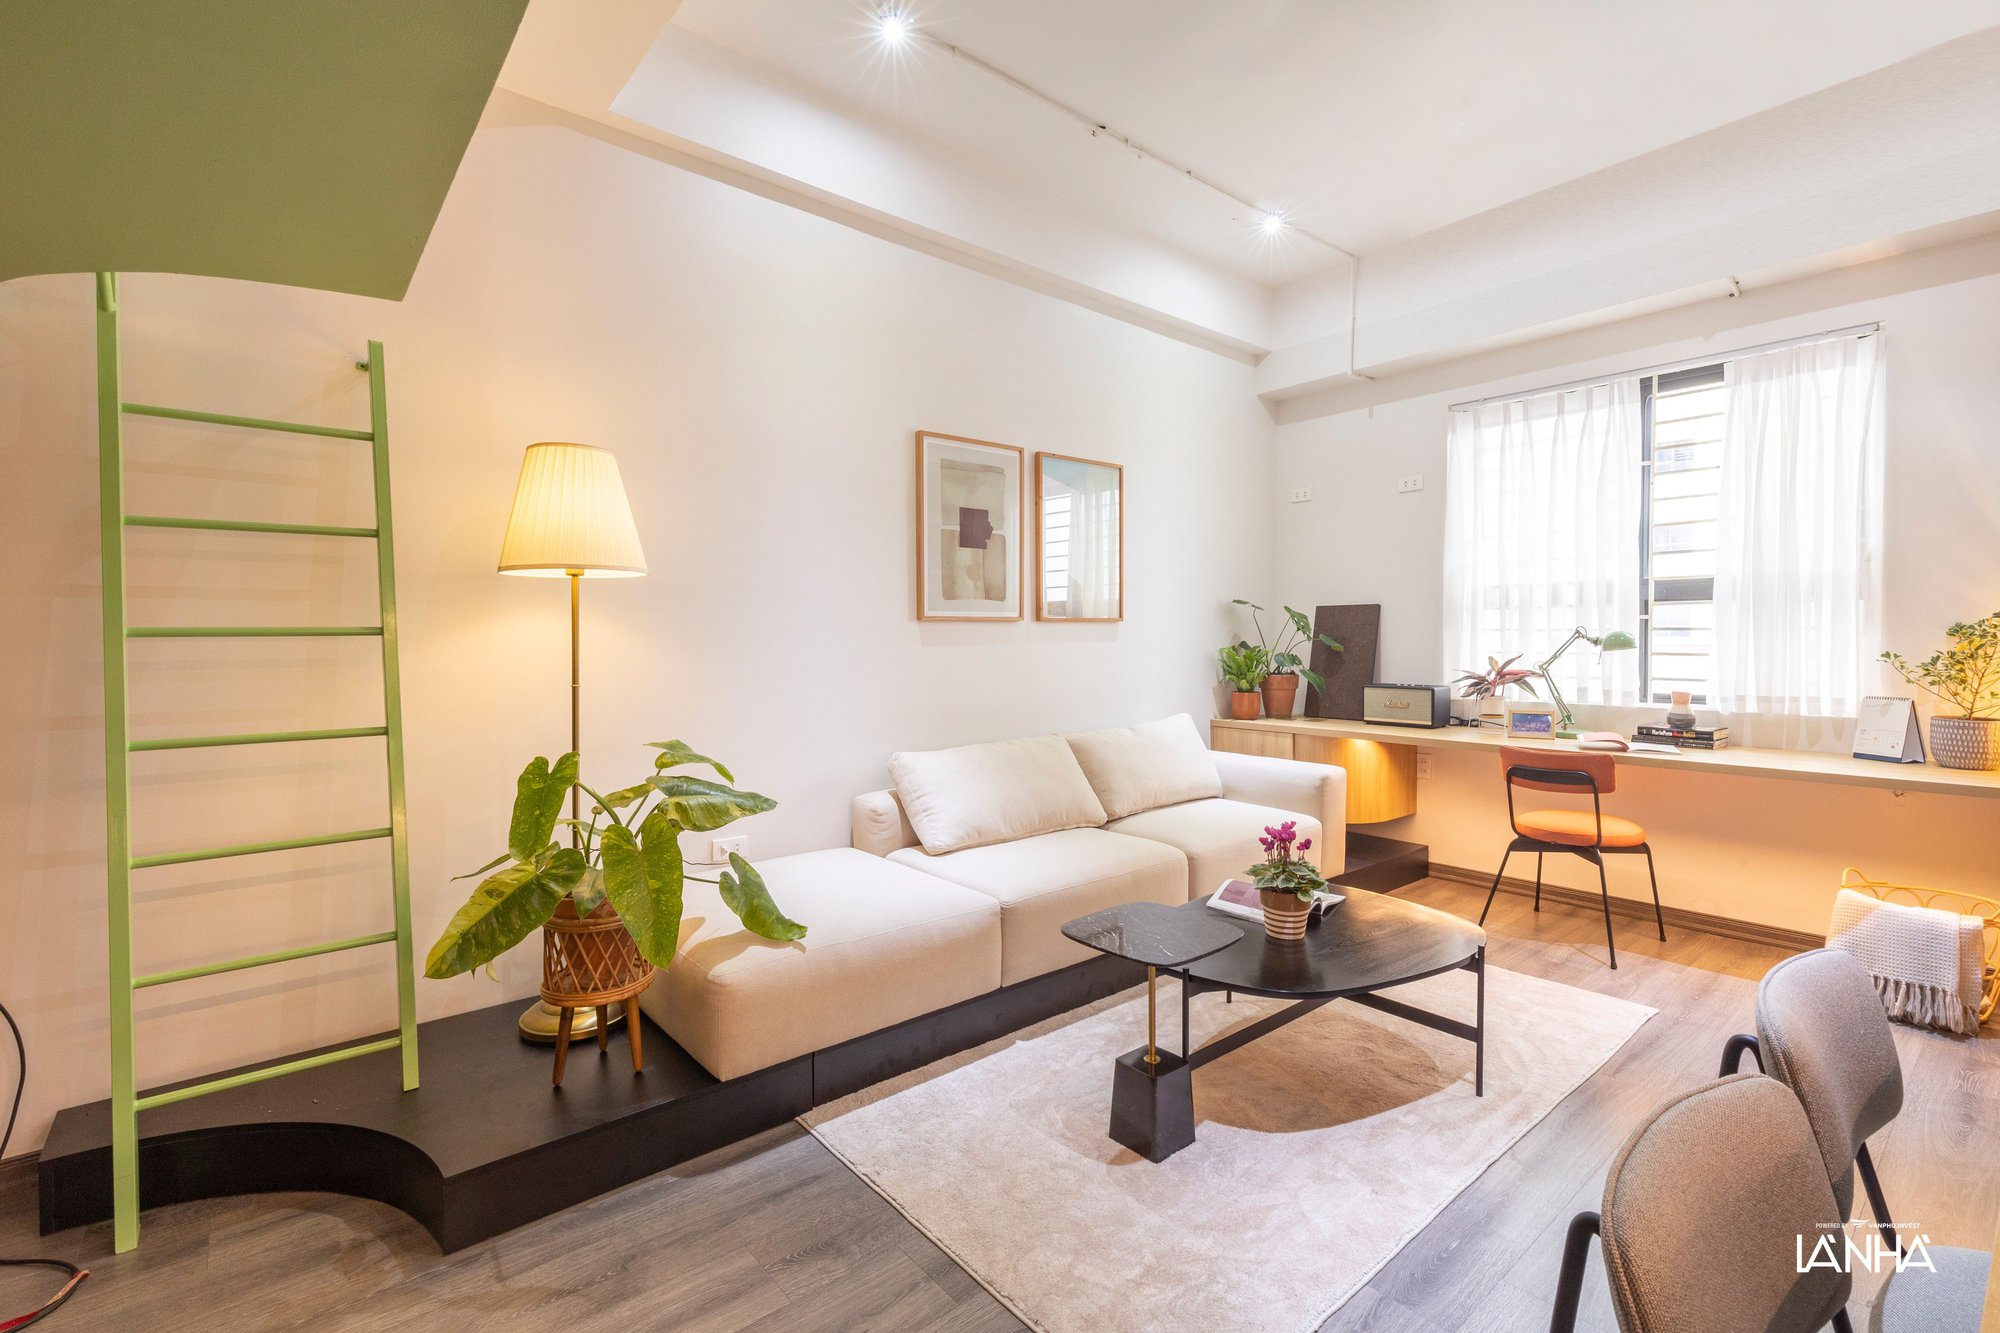 Căn hộ nhỏ 58m² ở Hà Nội có phòng khách rộng &quot;thênh thang&quot;, bí kíp nằm hết ở giải pháp sử dụng đồ nội thất tài tình  - Ảnh 3.